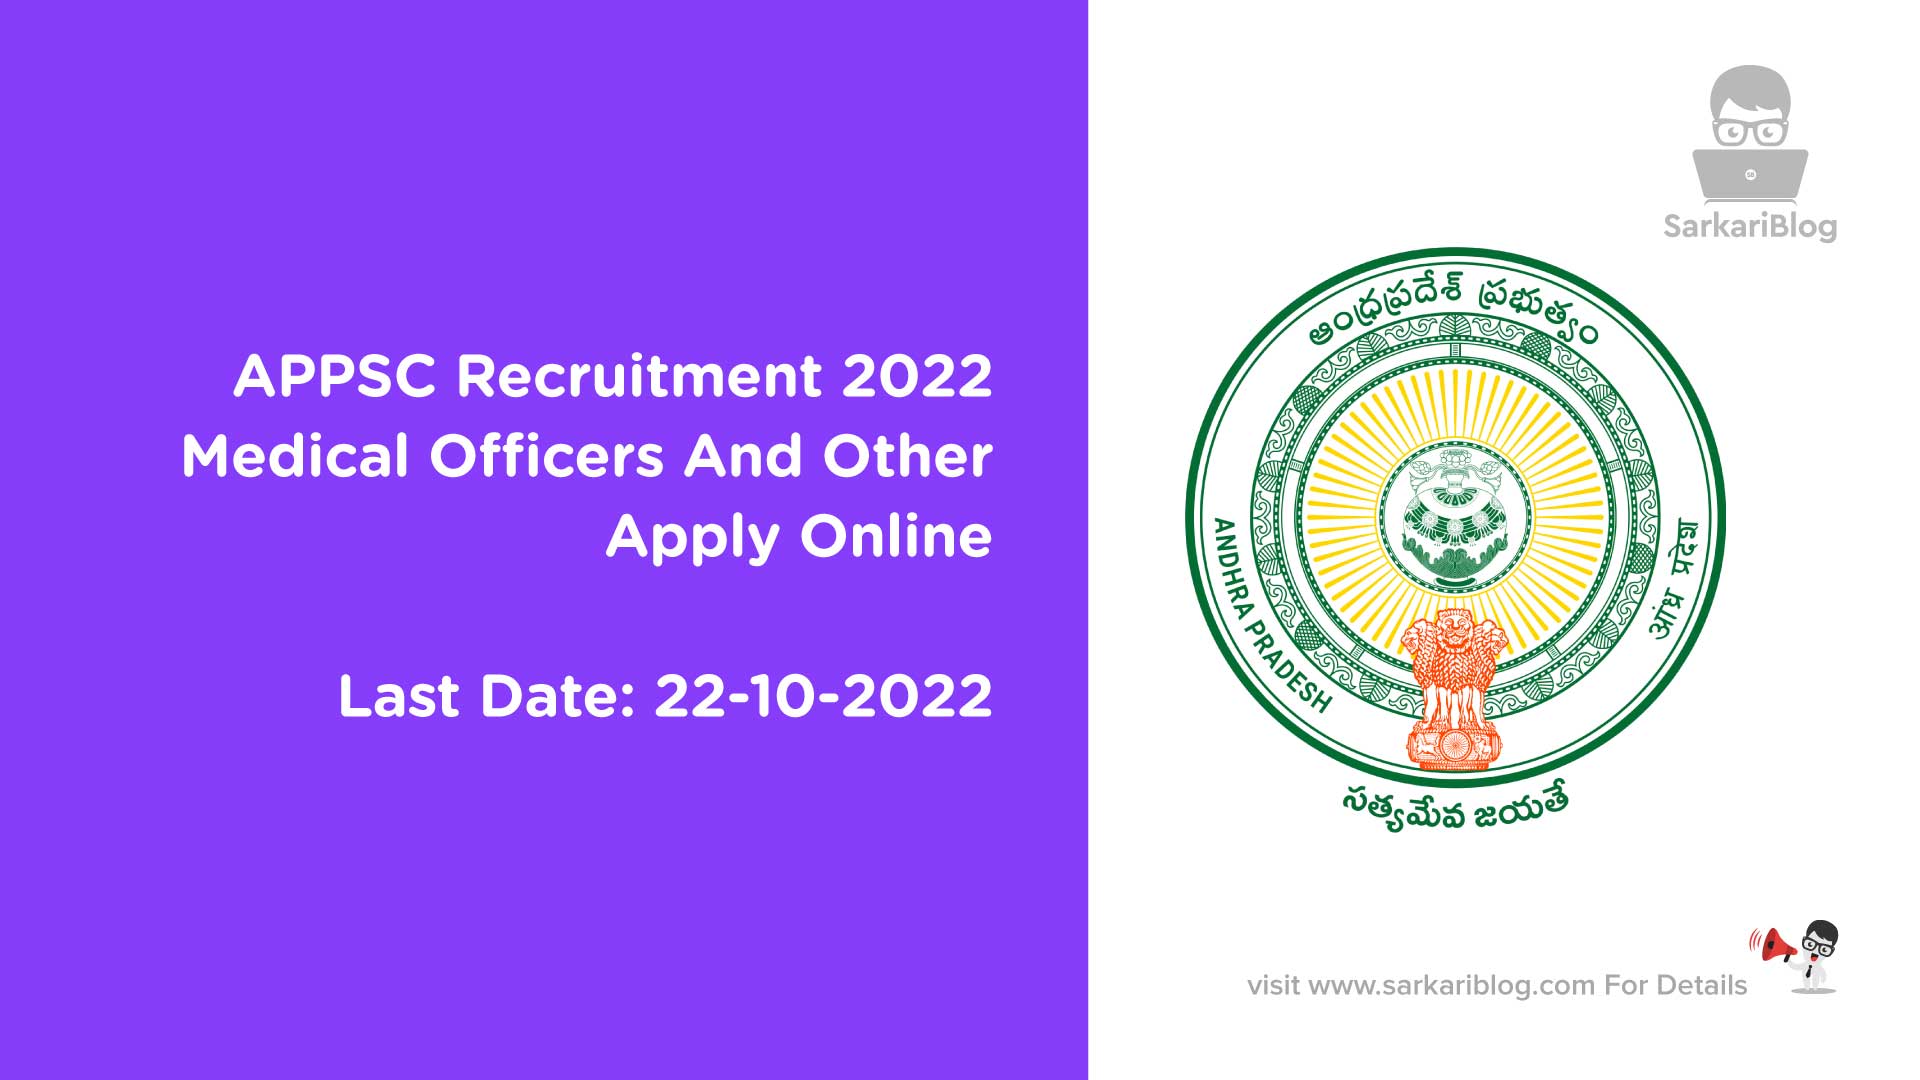 APPSC Recruitment 2022